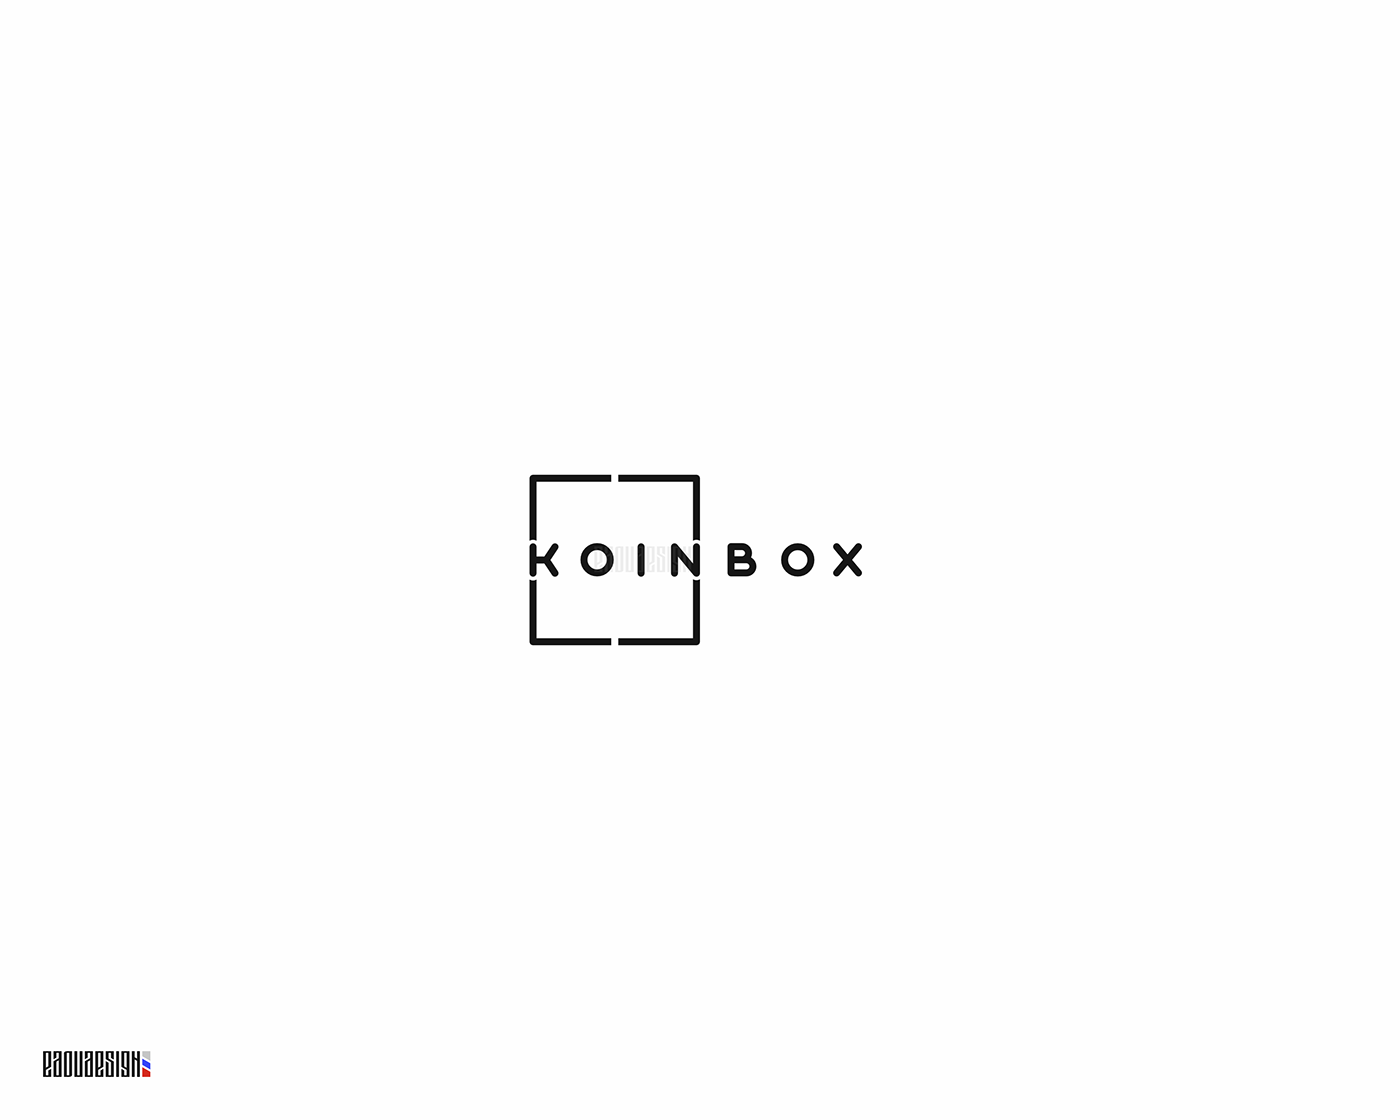 box coin coinbox creativelogo EdouDesign hiddenmark minimallogo modular square typography logo